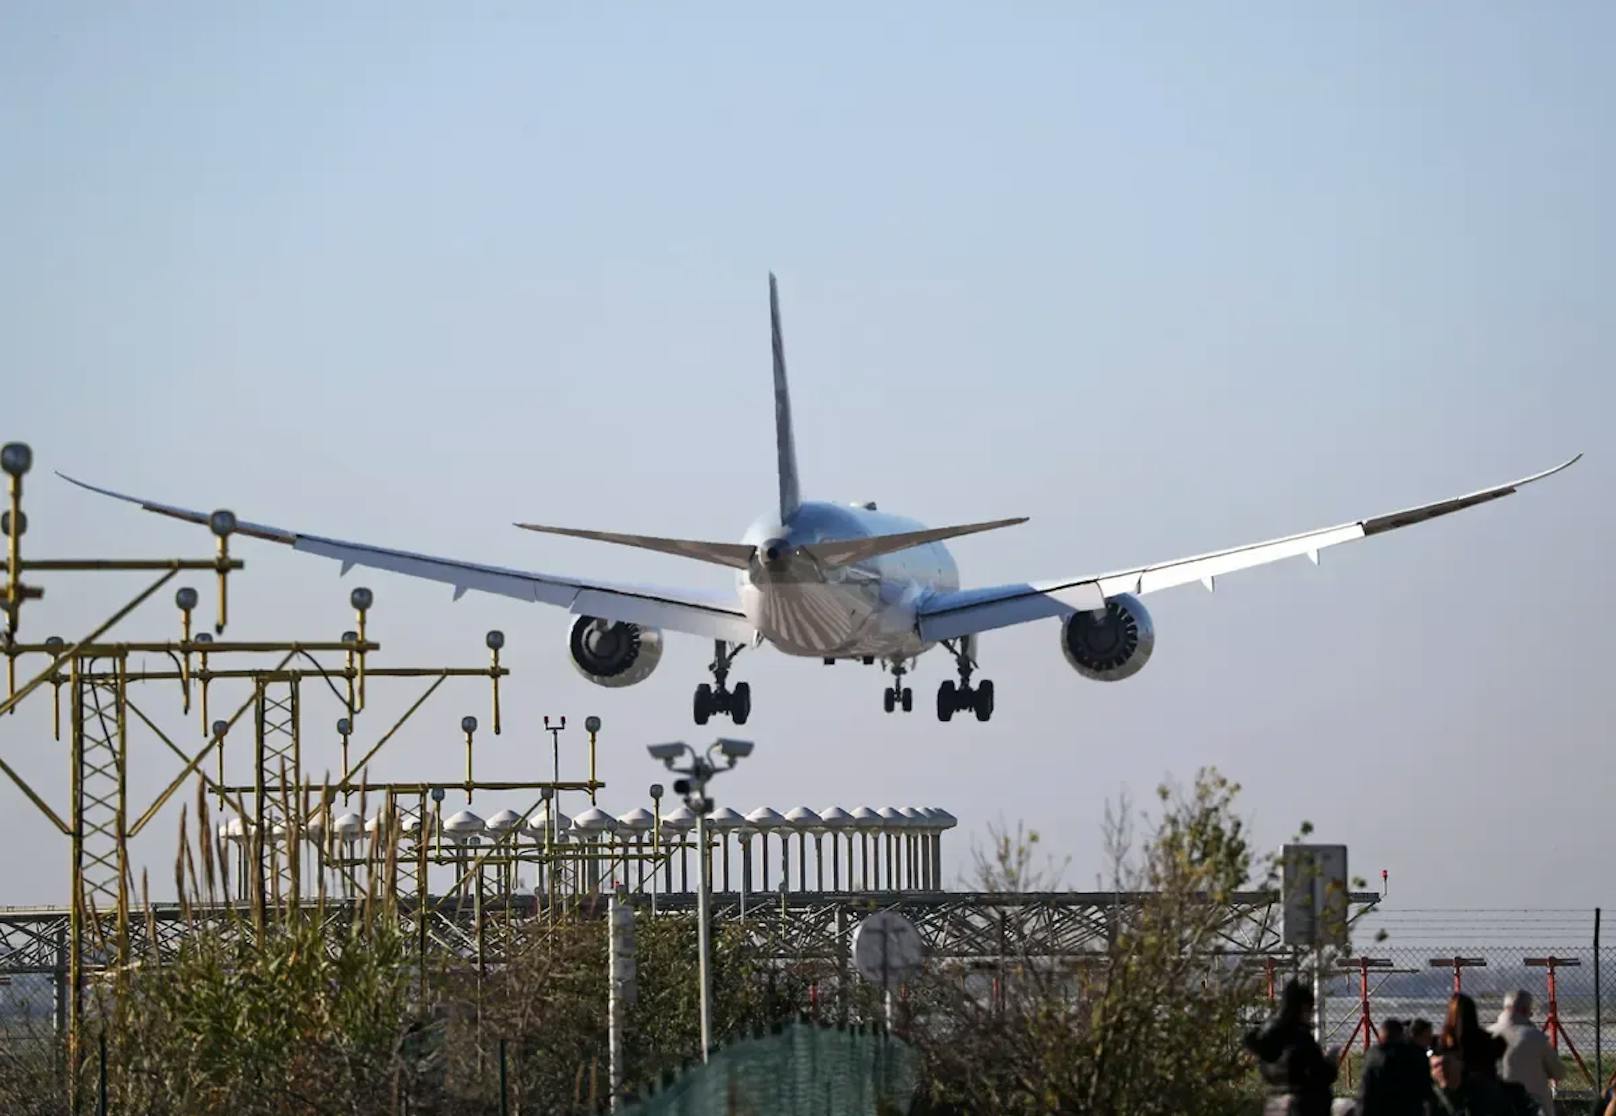 Pannenserie bei Boeing! Defekt an Passagier-Jet entdeckt